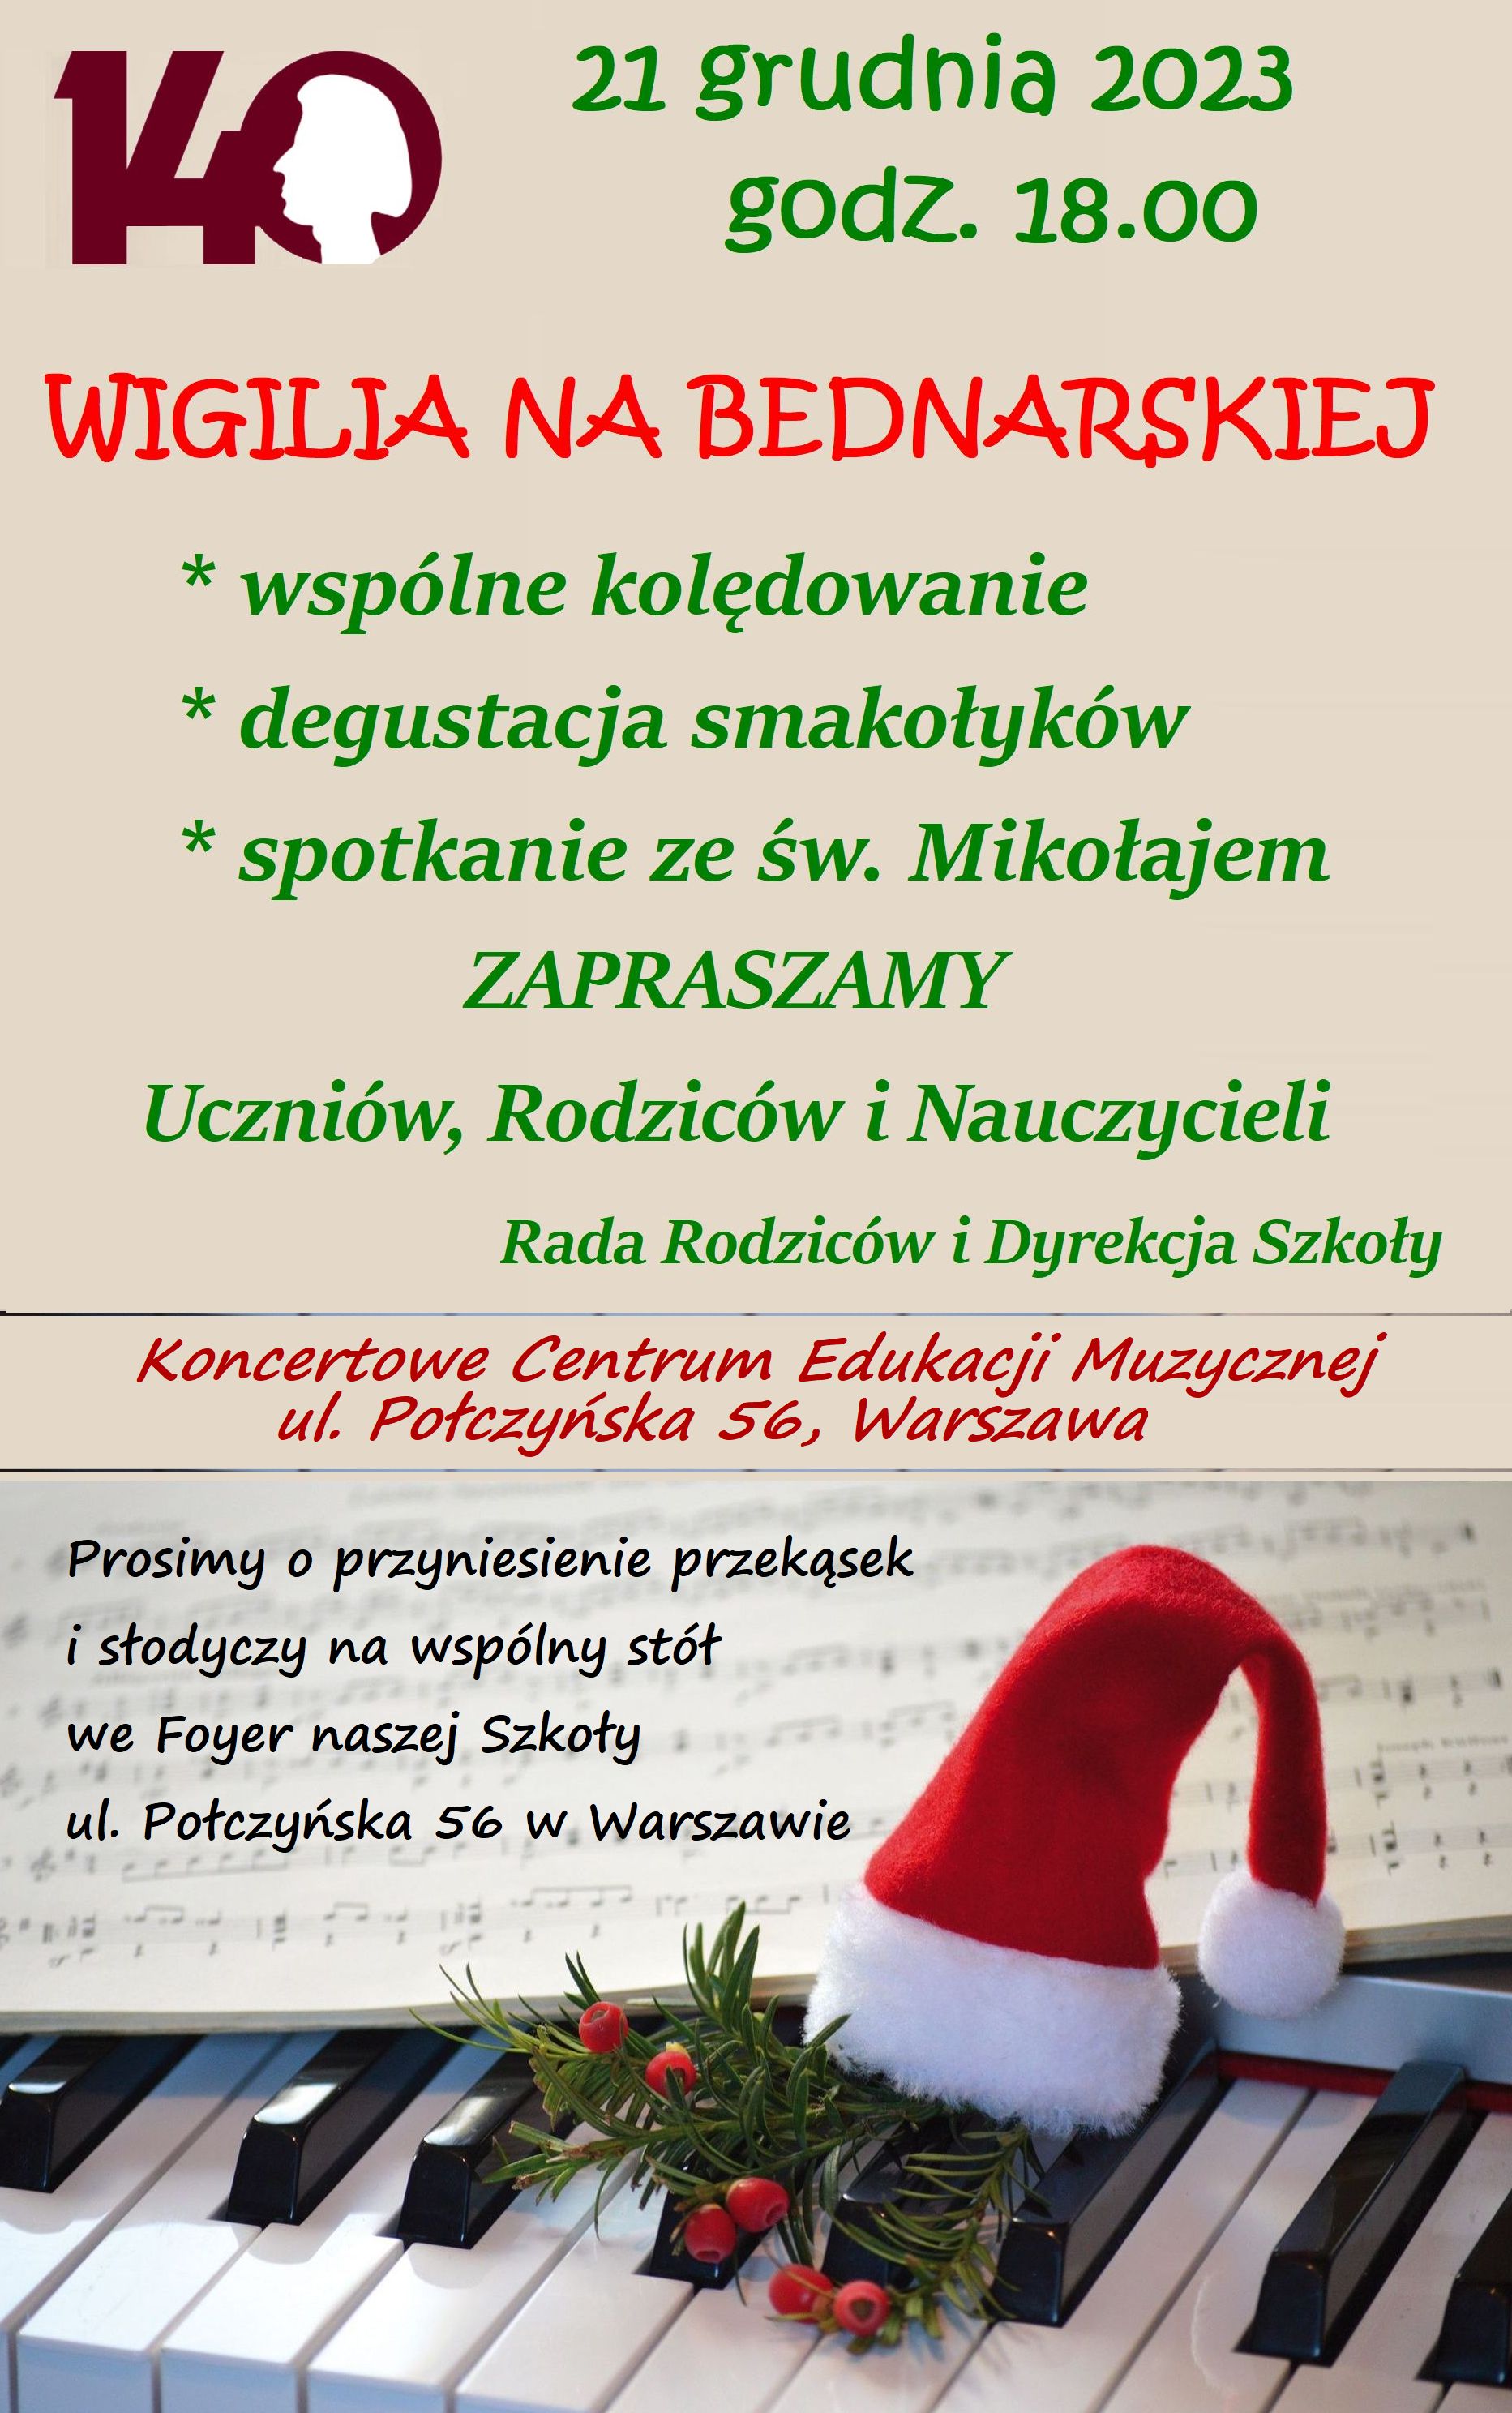 Afisz - Wigilia Bednarskiej - 21.12.2023 r.